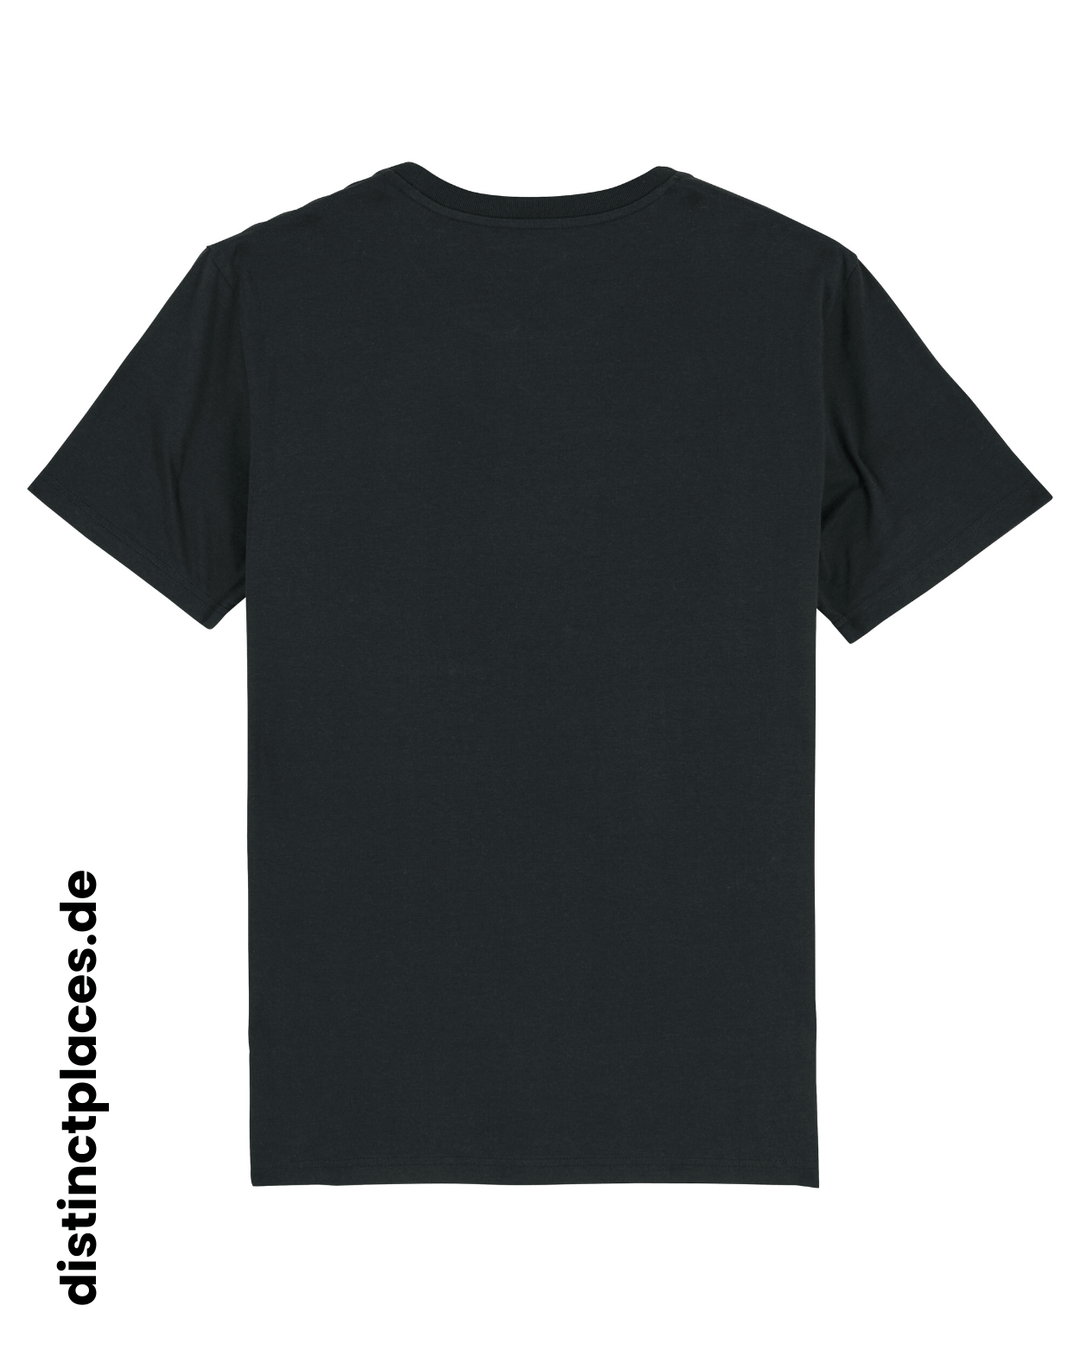 Schwarzes fairtrade, vegan und bio-baumwoll T-Shirt von hinten mit einem minimalistischem weißen Logo, beziehungsweise Wappen für Sachsen